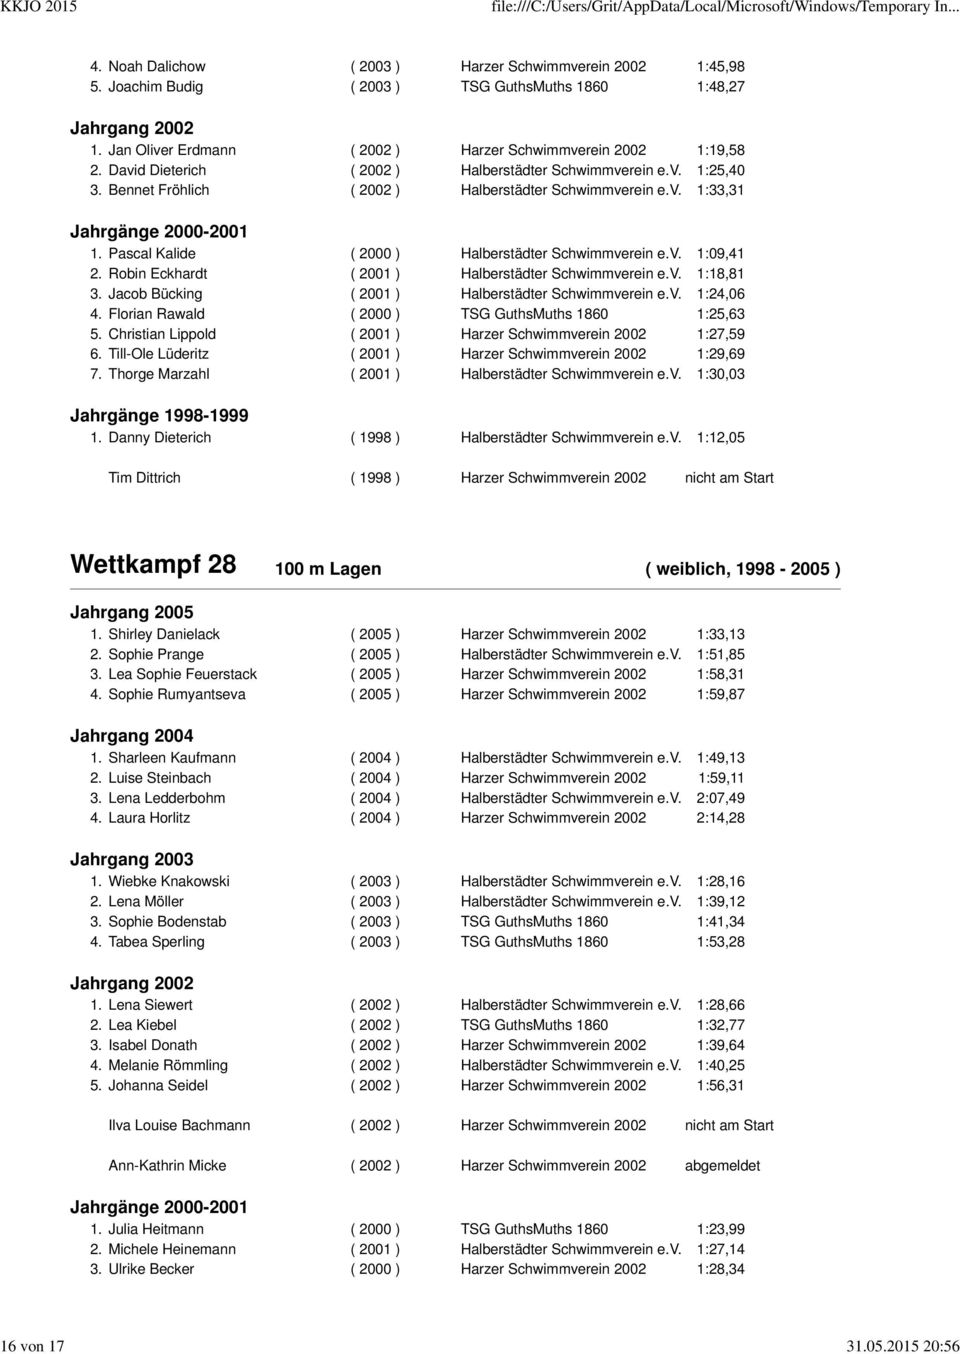 Pascal Kalide ( 2000 ) Halberstädter Schwimmverein e.v. 1:09,41 2. Robin Eckhardt ( 2001 ) Halberstädter Schwimmverein e.v. 1:18,81 3. Jacob Bücking ( 2001 ) Halberstädter Schwimmverein e.v. 1:24,06 4.